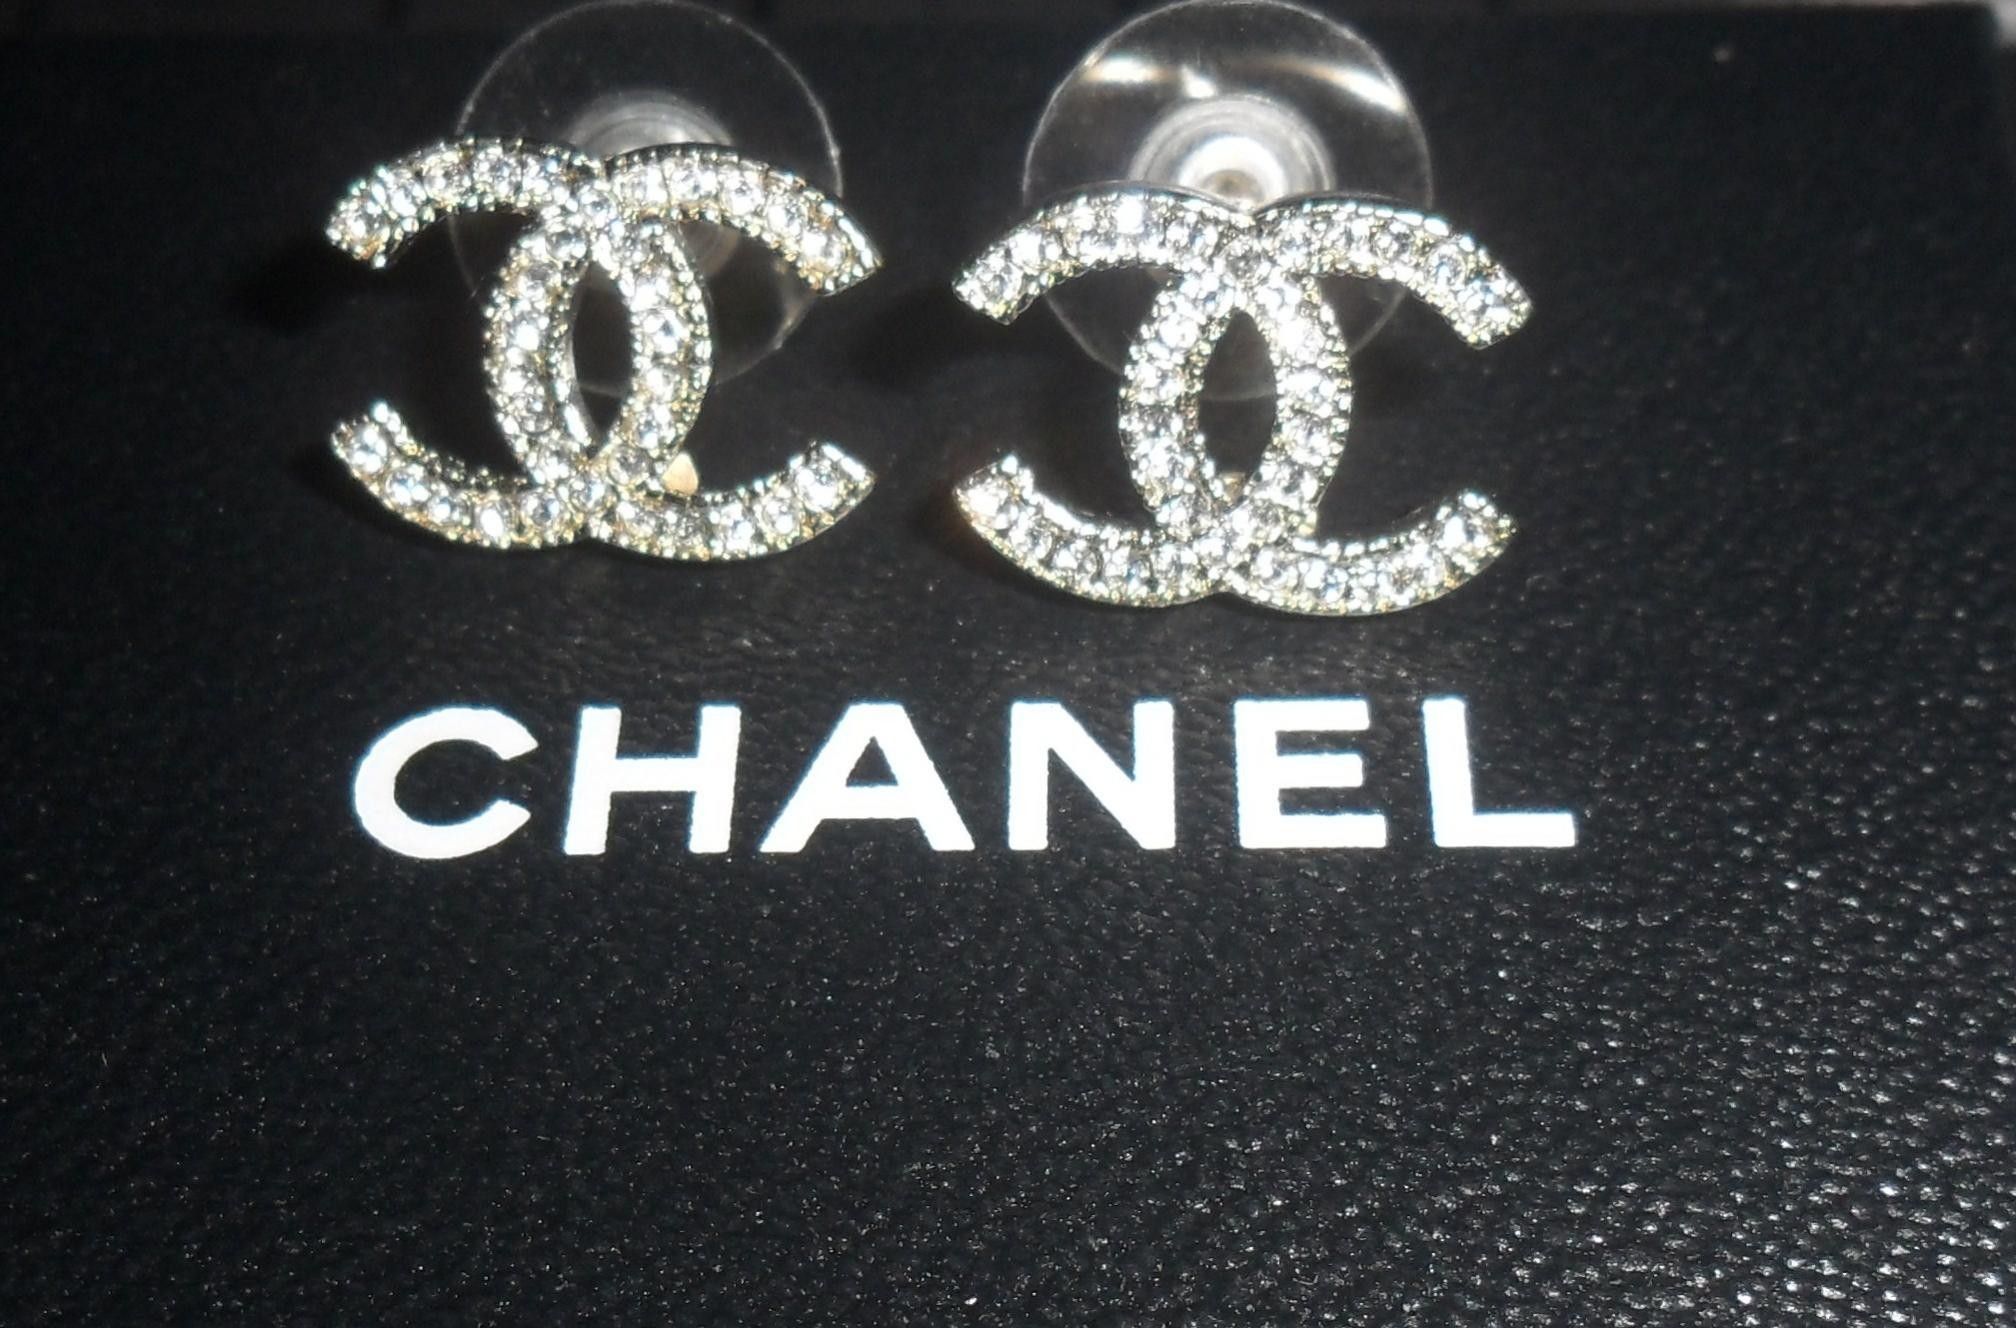 Fondos de Chanel (más de 72 imágenes de fondo)